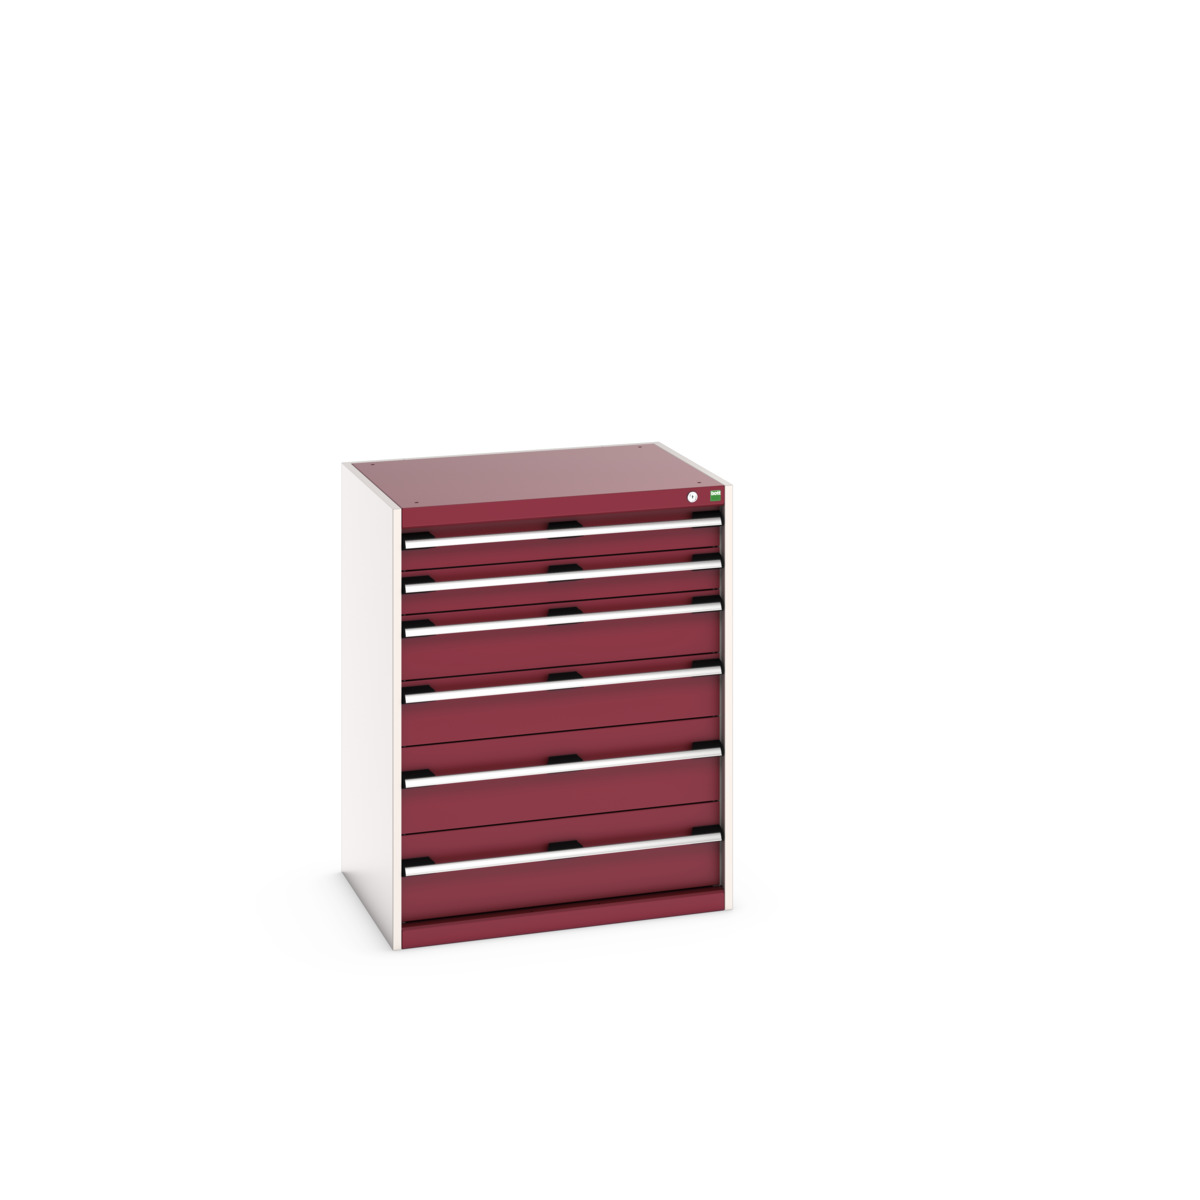 40020049.24V - cubio drawer cabinet